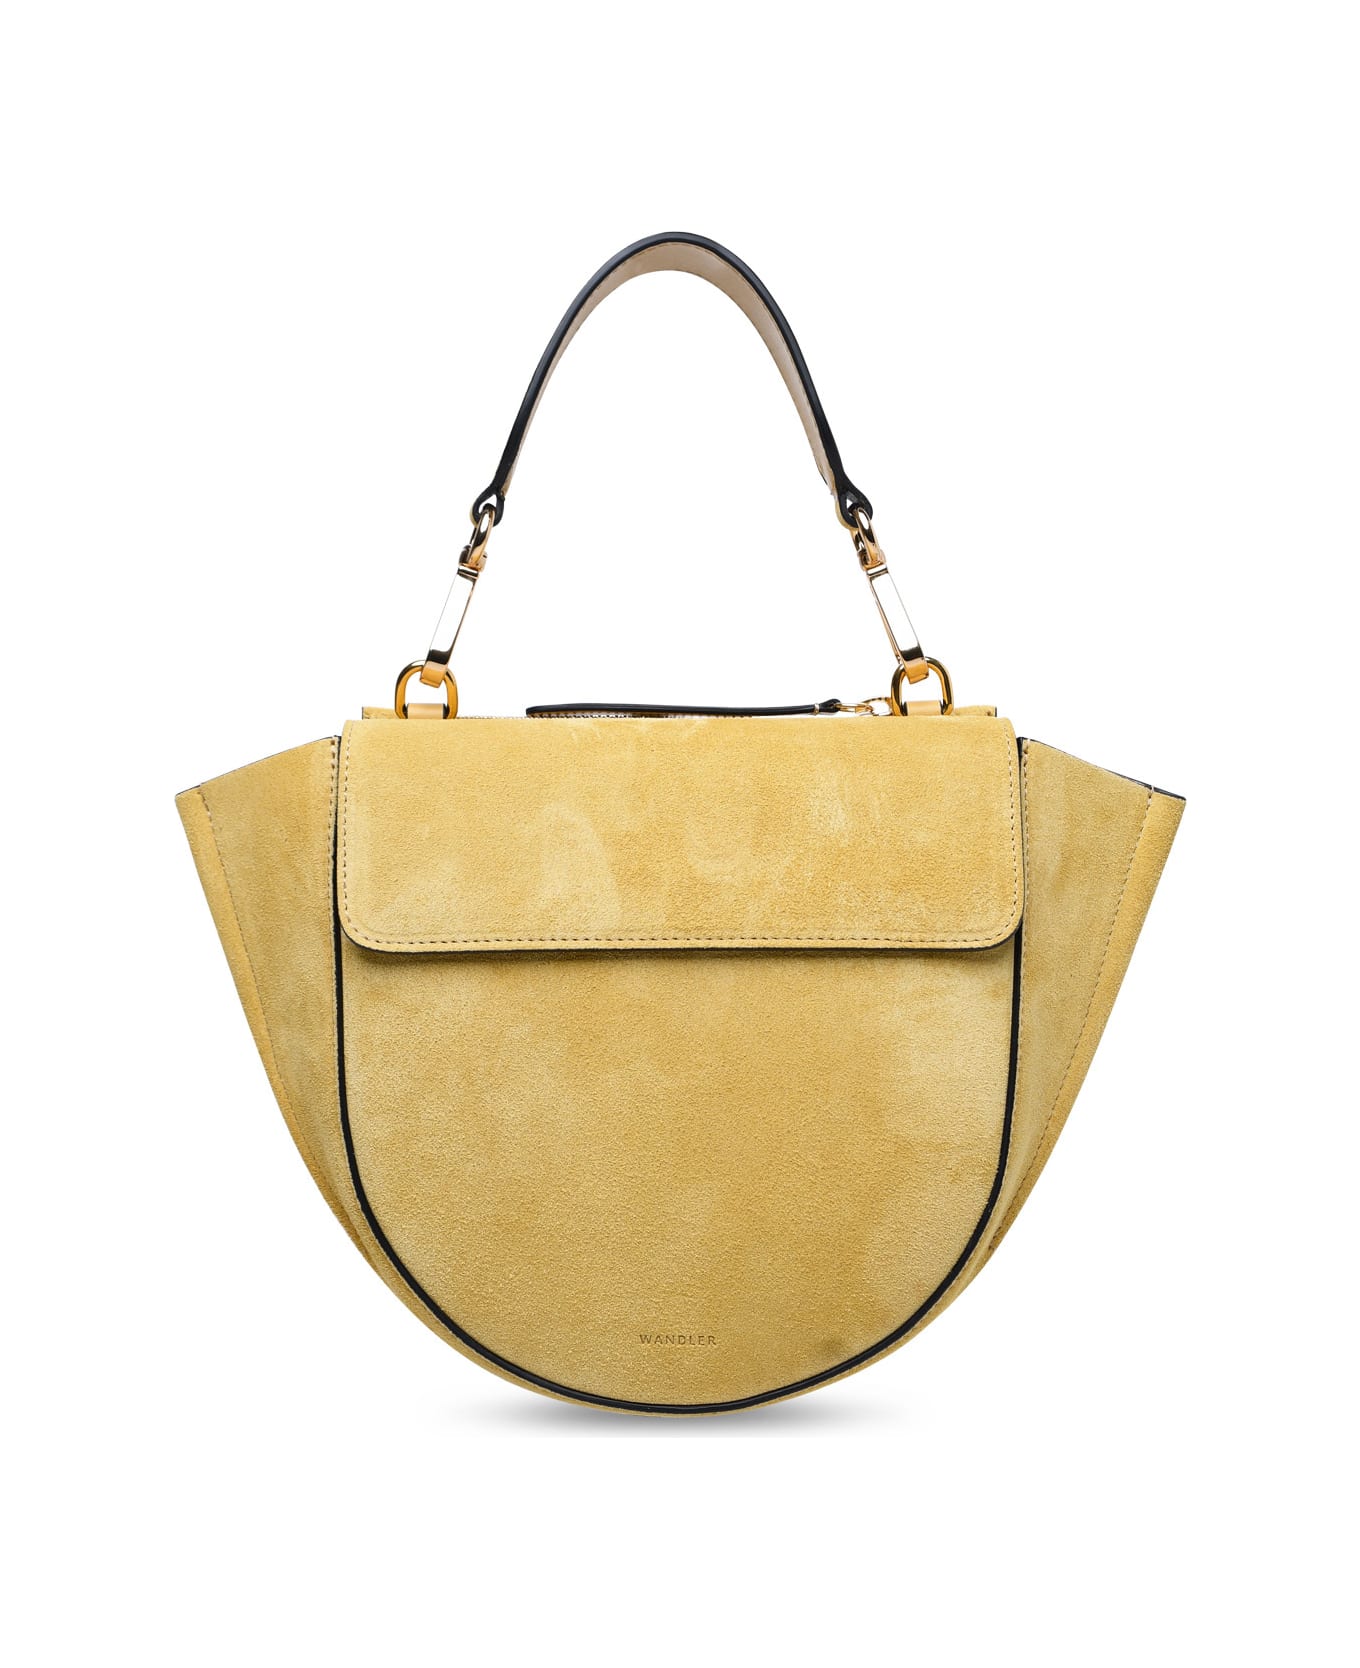 Wandler Mini 'hortensia' Sand Calf Leather Bag - Beige